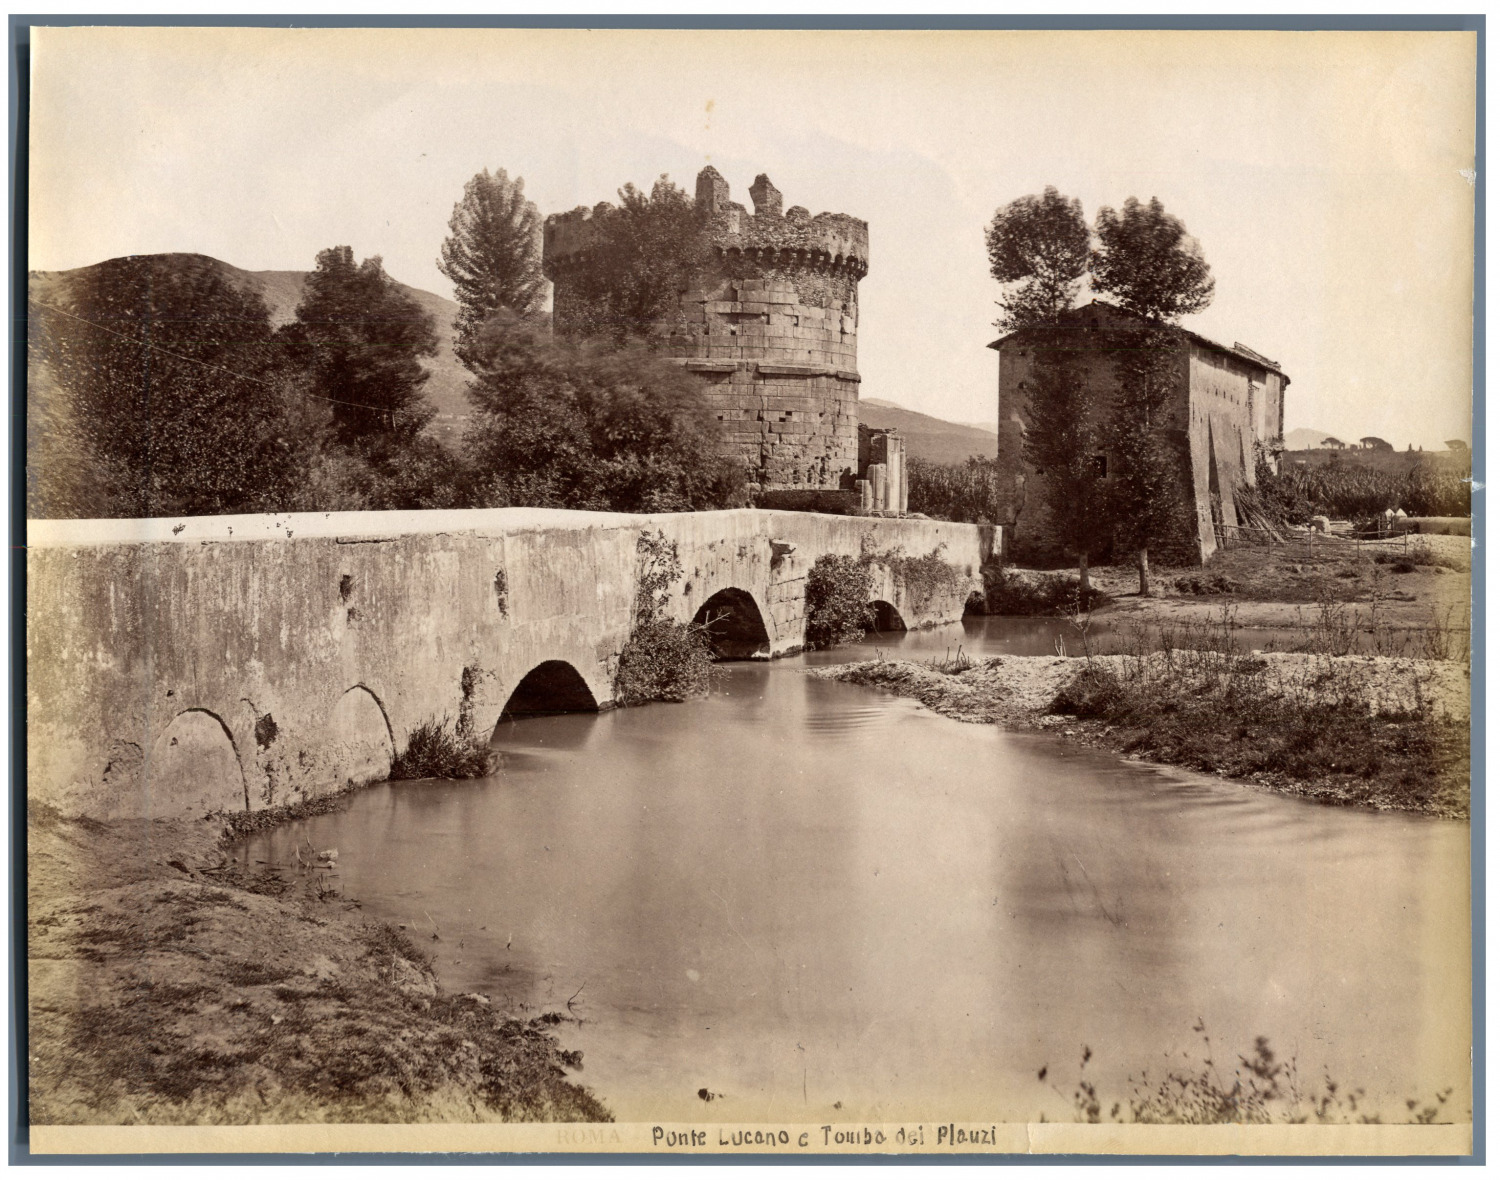 Italy, Rome, Ponte Lucano and Tombo dei Plauzi Vintage Albumen Print.  Print a